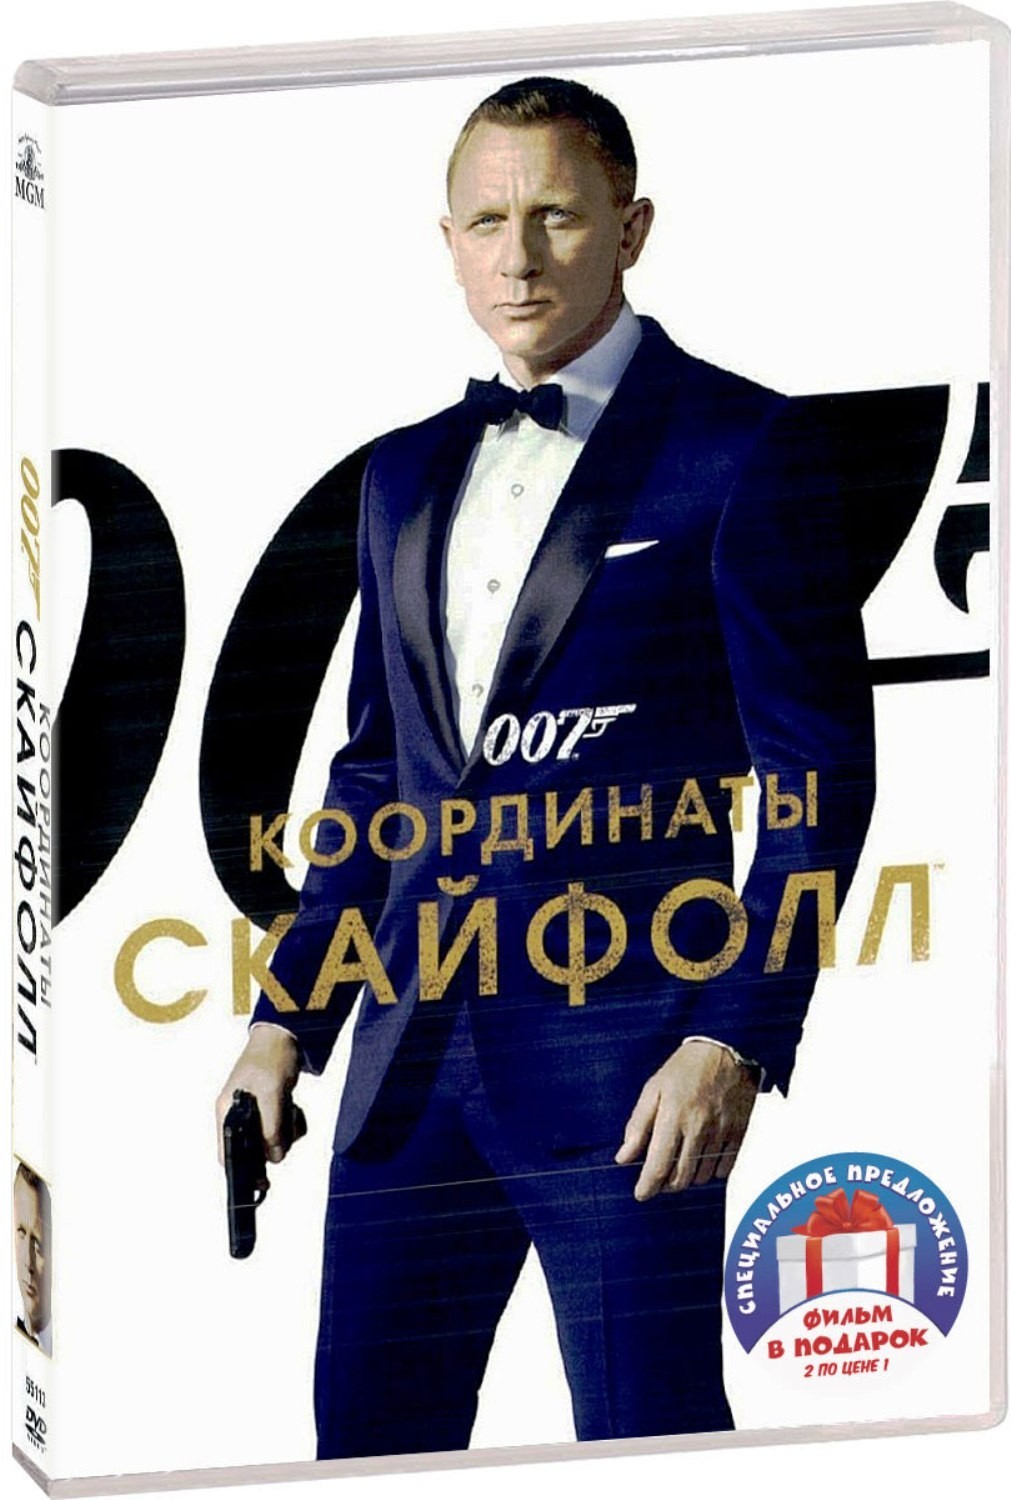 цена 007: Координаты «Скайфолл» / Спектр (2 DVD)